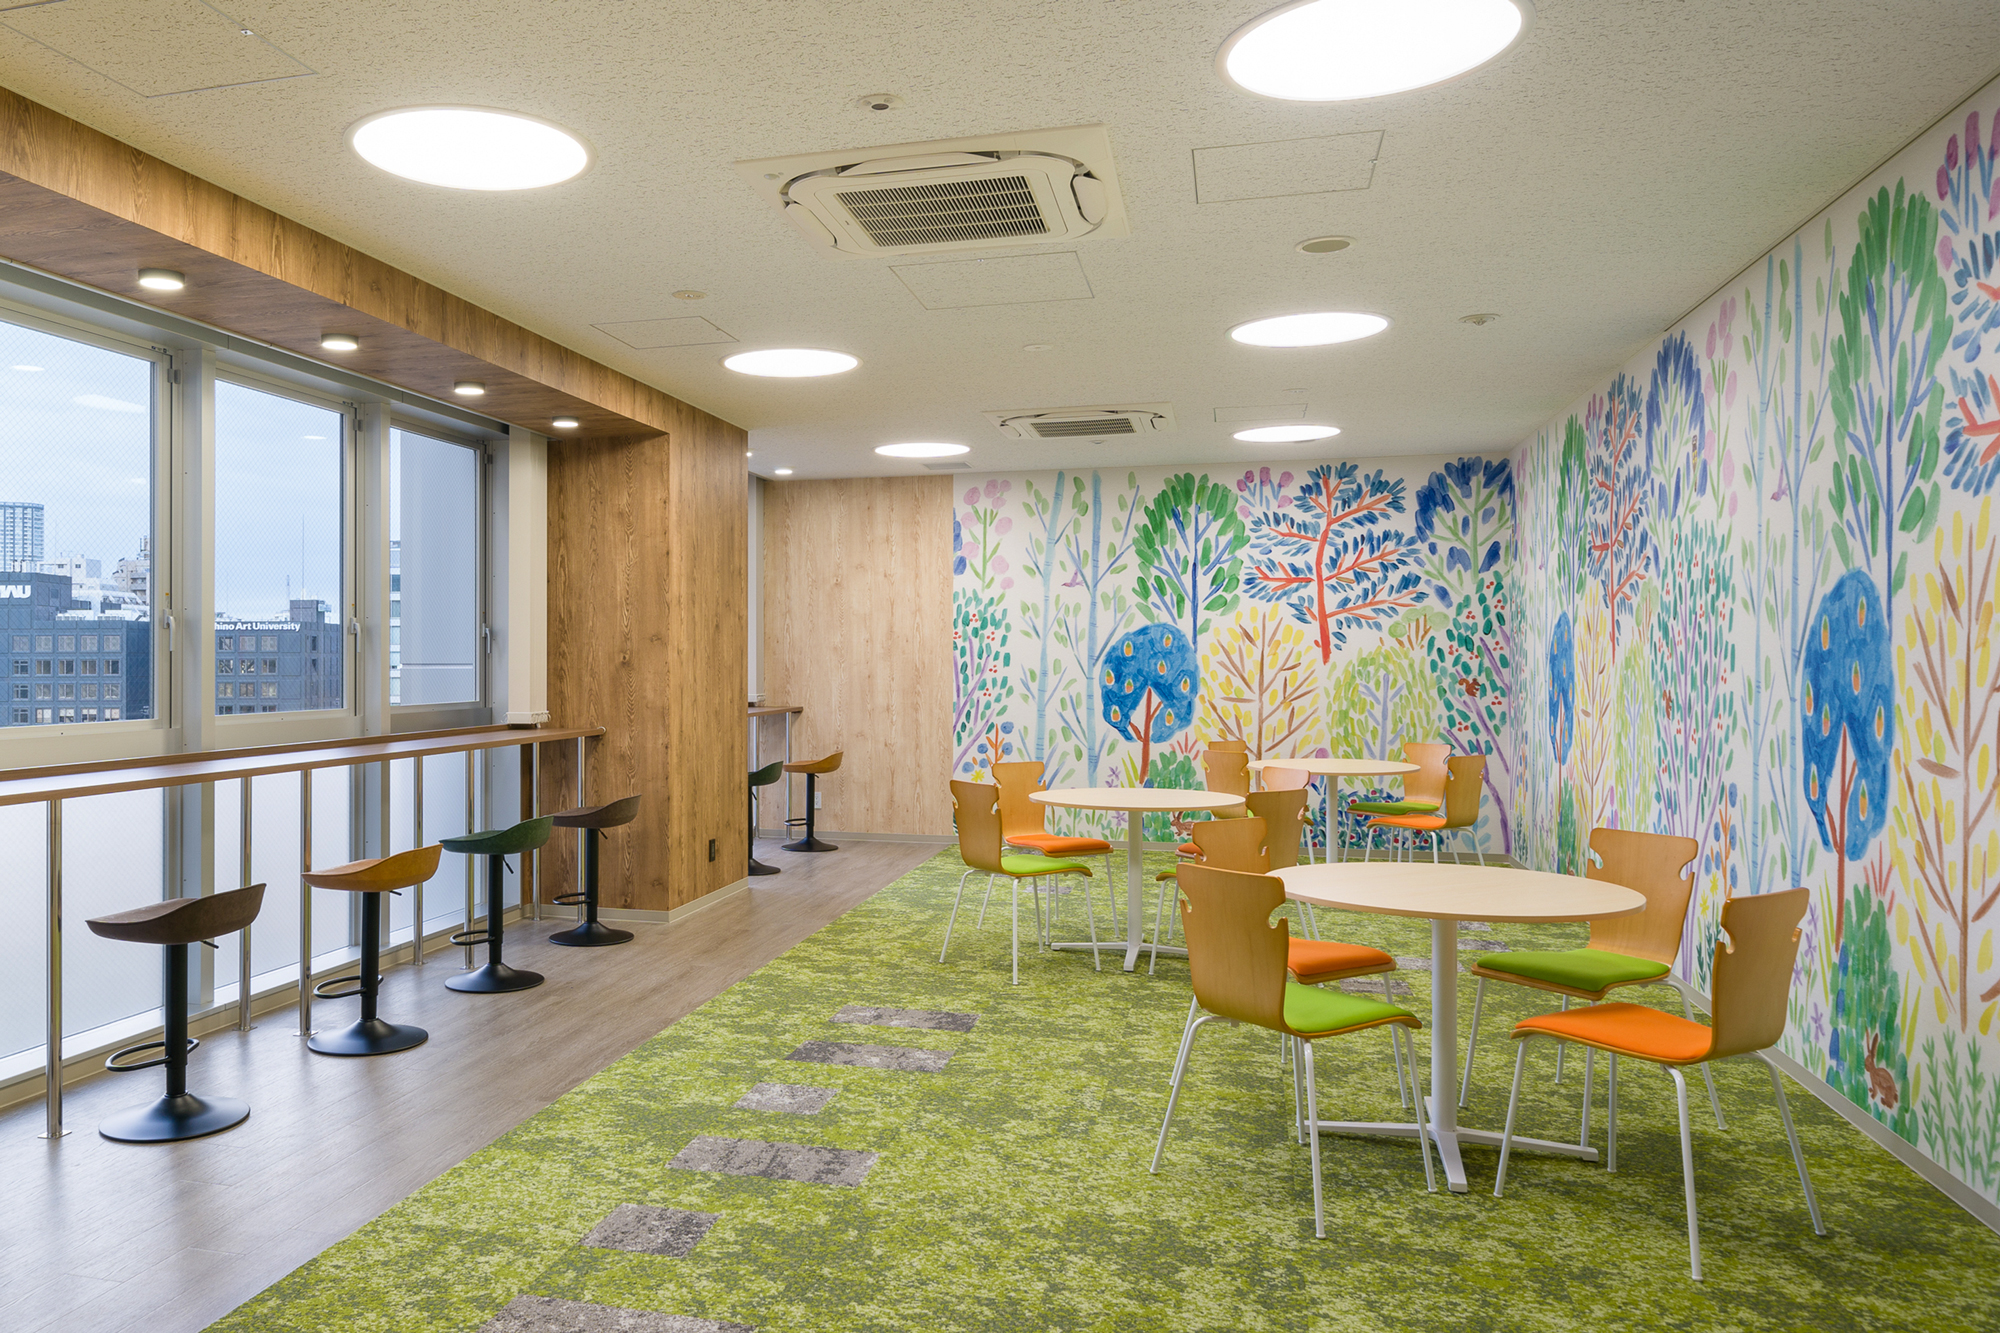 東京都千代田区のオフィスのラウンジスペースに色どり豊かな森が広がる、佐々木愛の「Forest / CRAS031」を展開